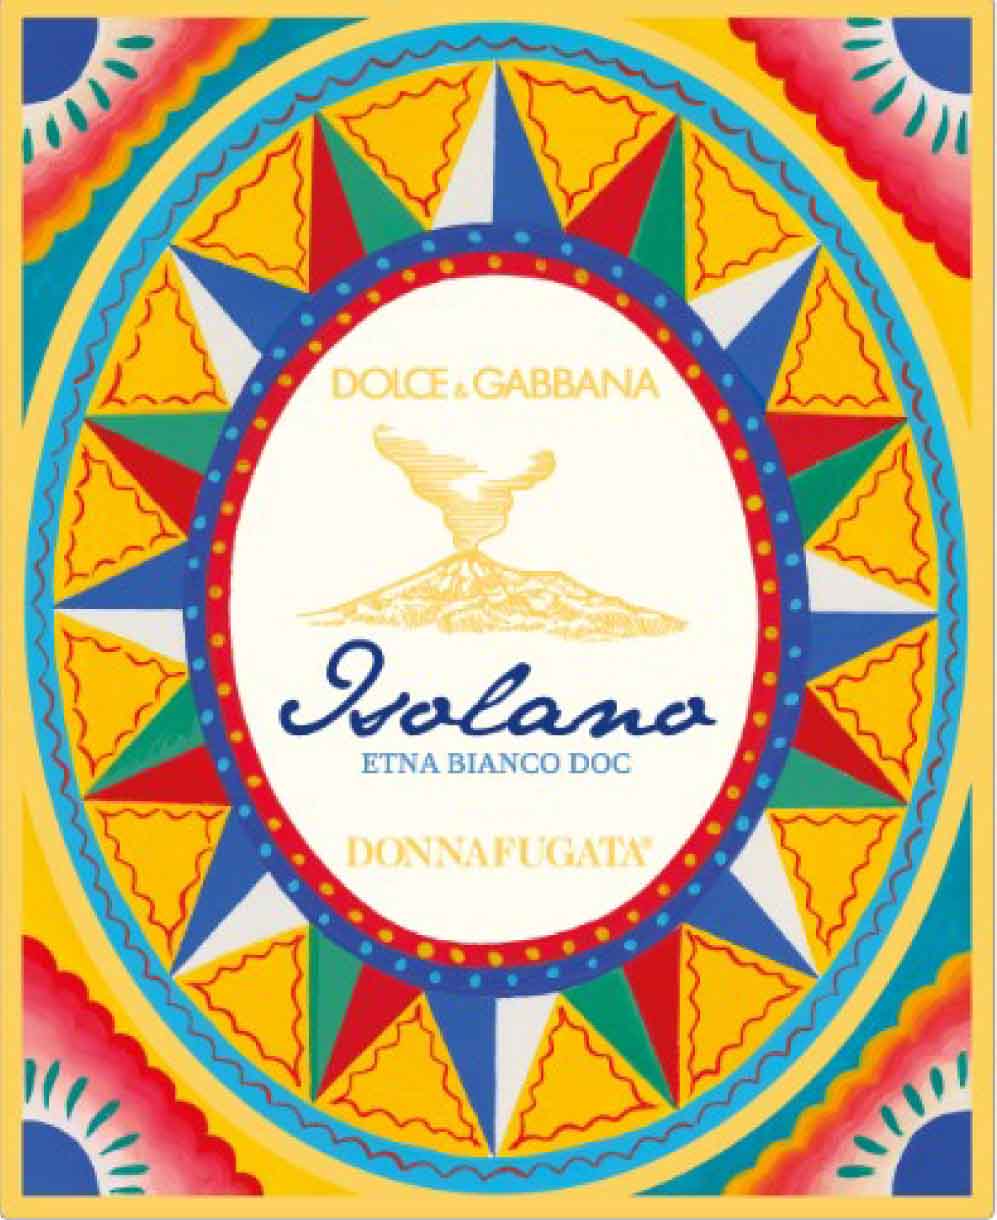 Donnafugata - Isolano Etna Bianco Dolce & Gabbana label